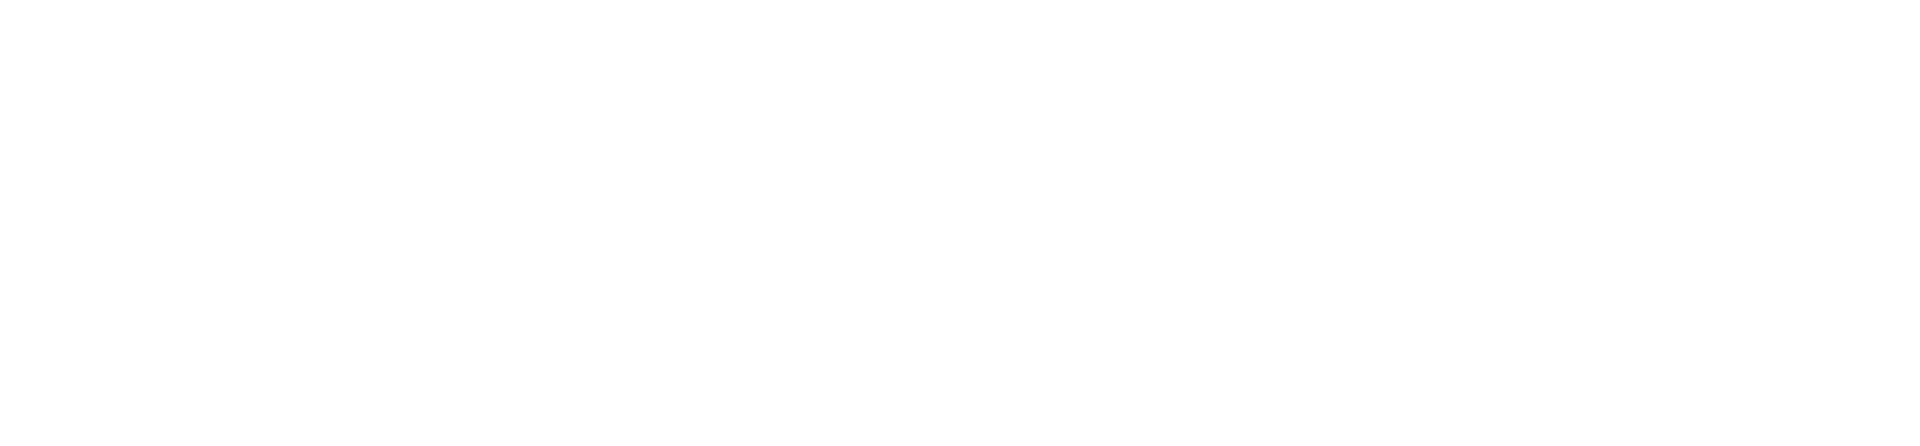 Evoluzione danza